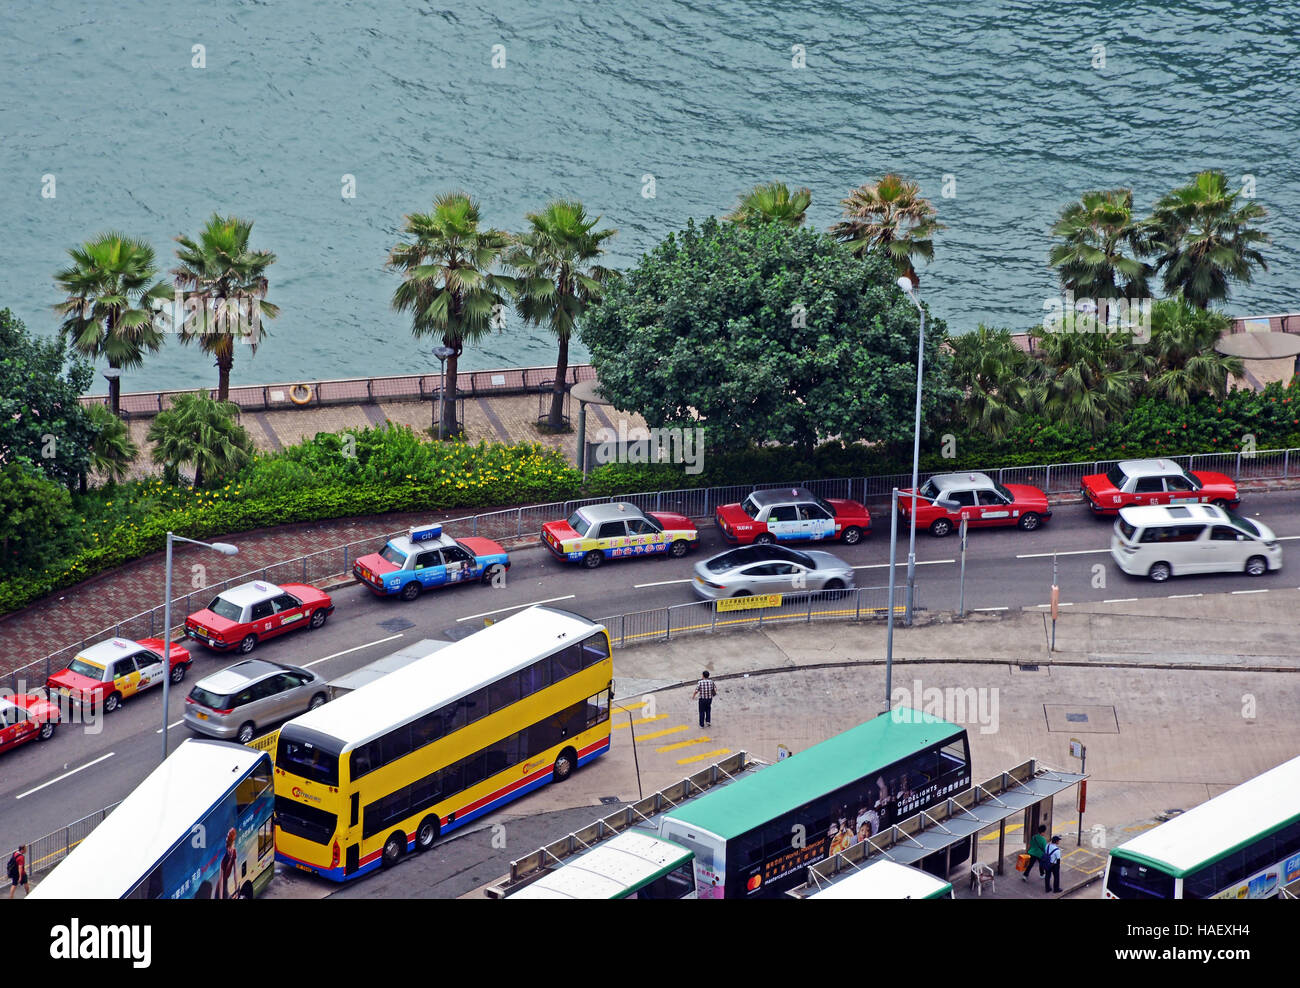 Vue aérienne de la station de taxis et les bus de l'île de Hong Kong Chine Banque D'Images